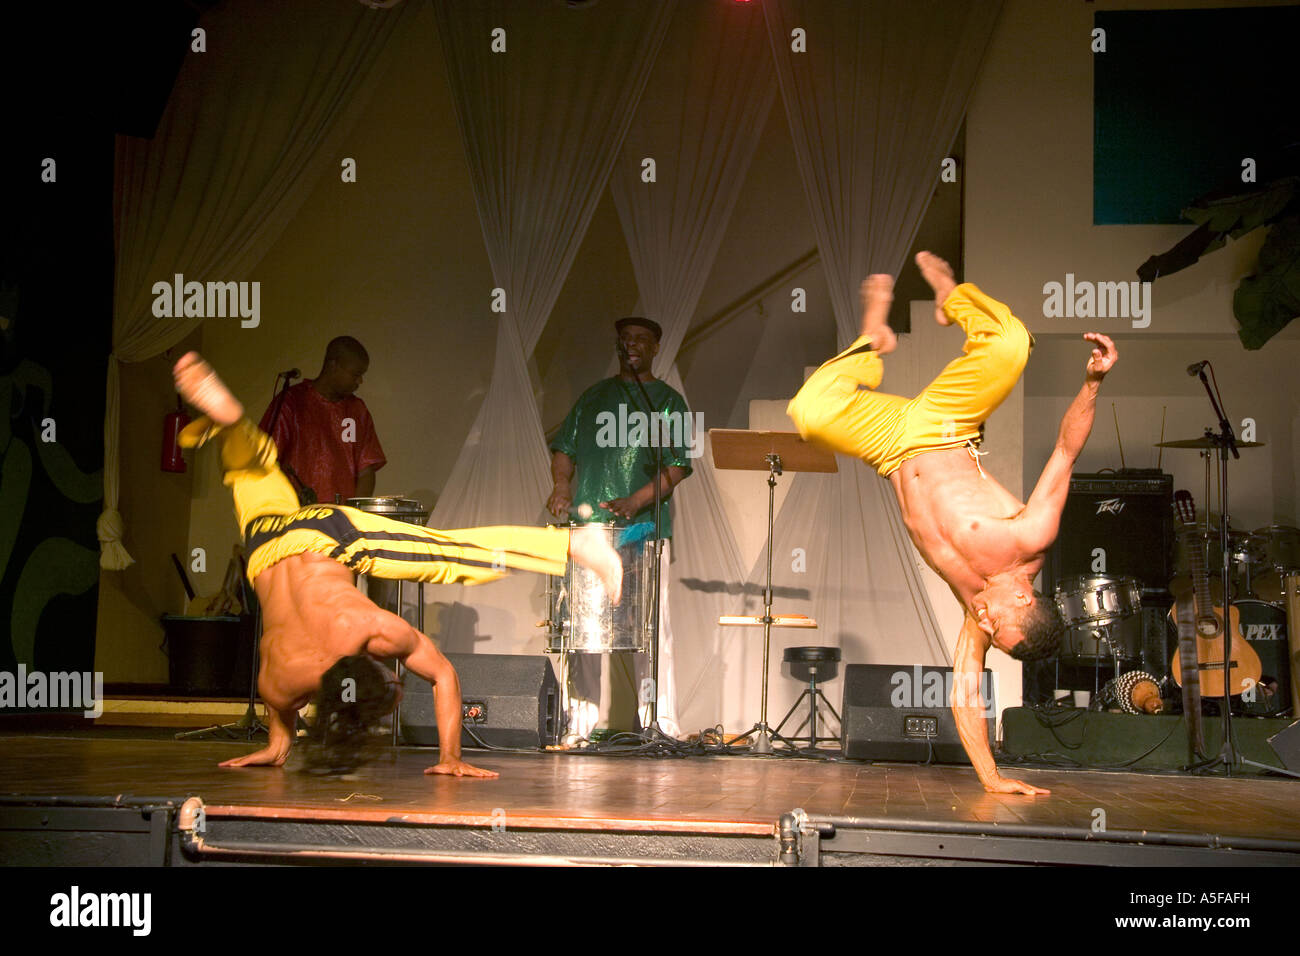 Les hommes d'effectuer une danse appelée arts martiaux Capoeira dans une boîte de nuit à Sao Paulo Brésil Banque D'Images